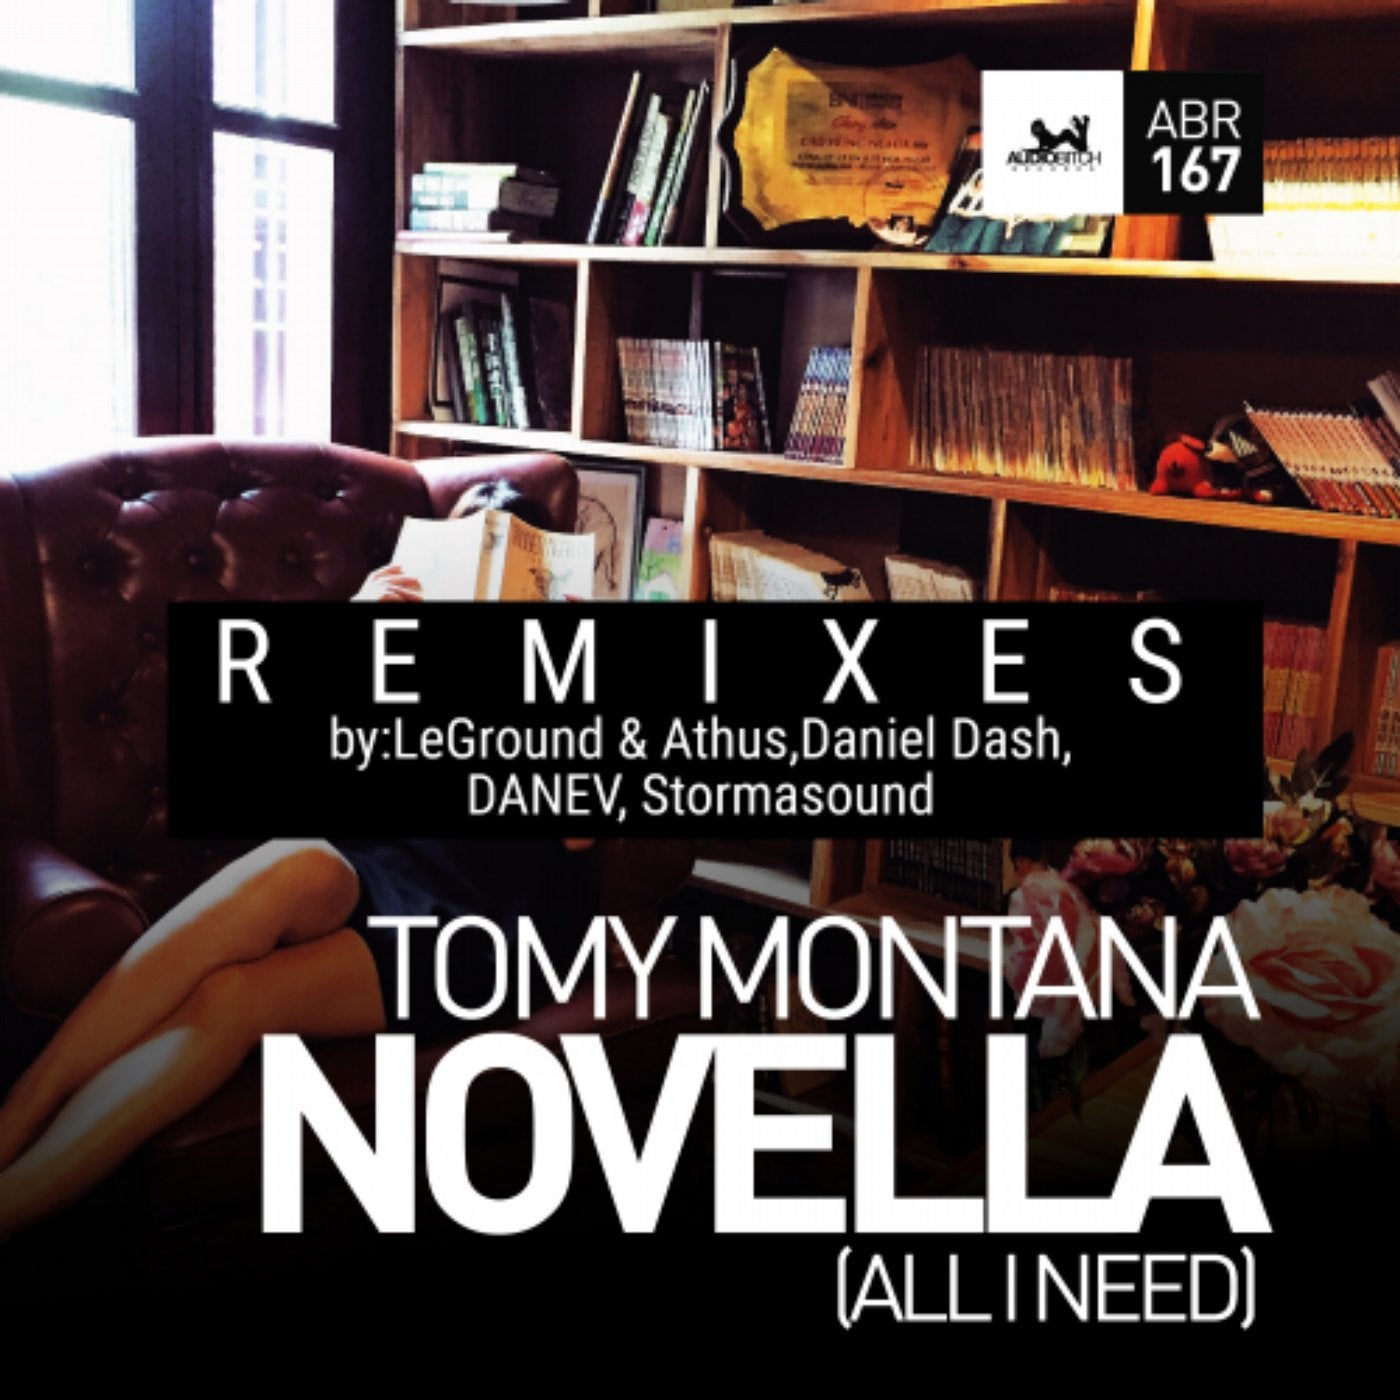 Novella (All I Need) Remixes